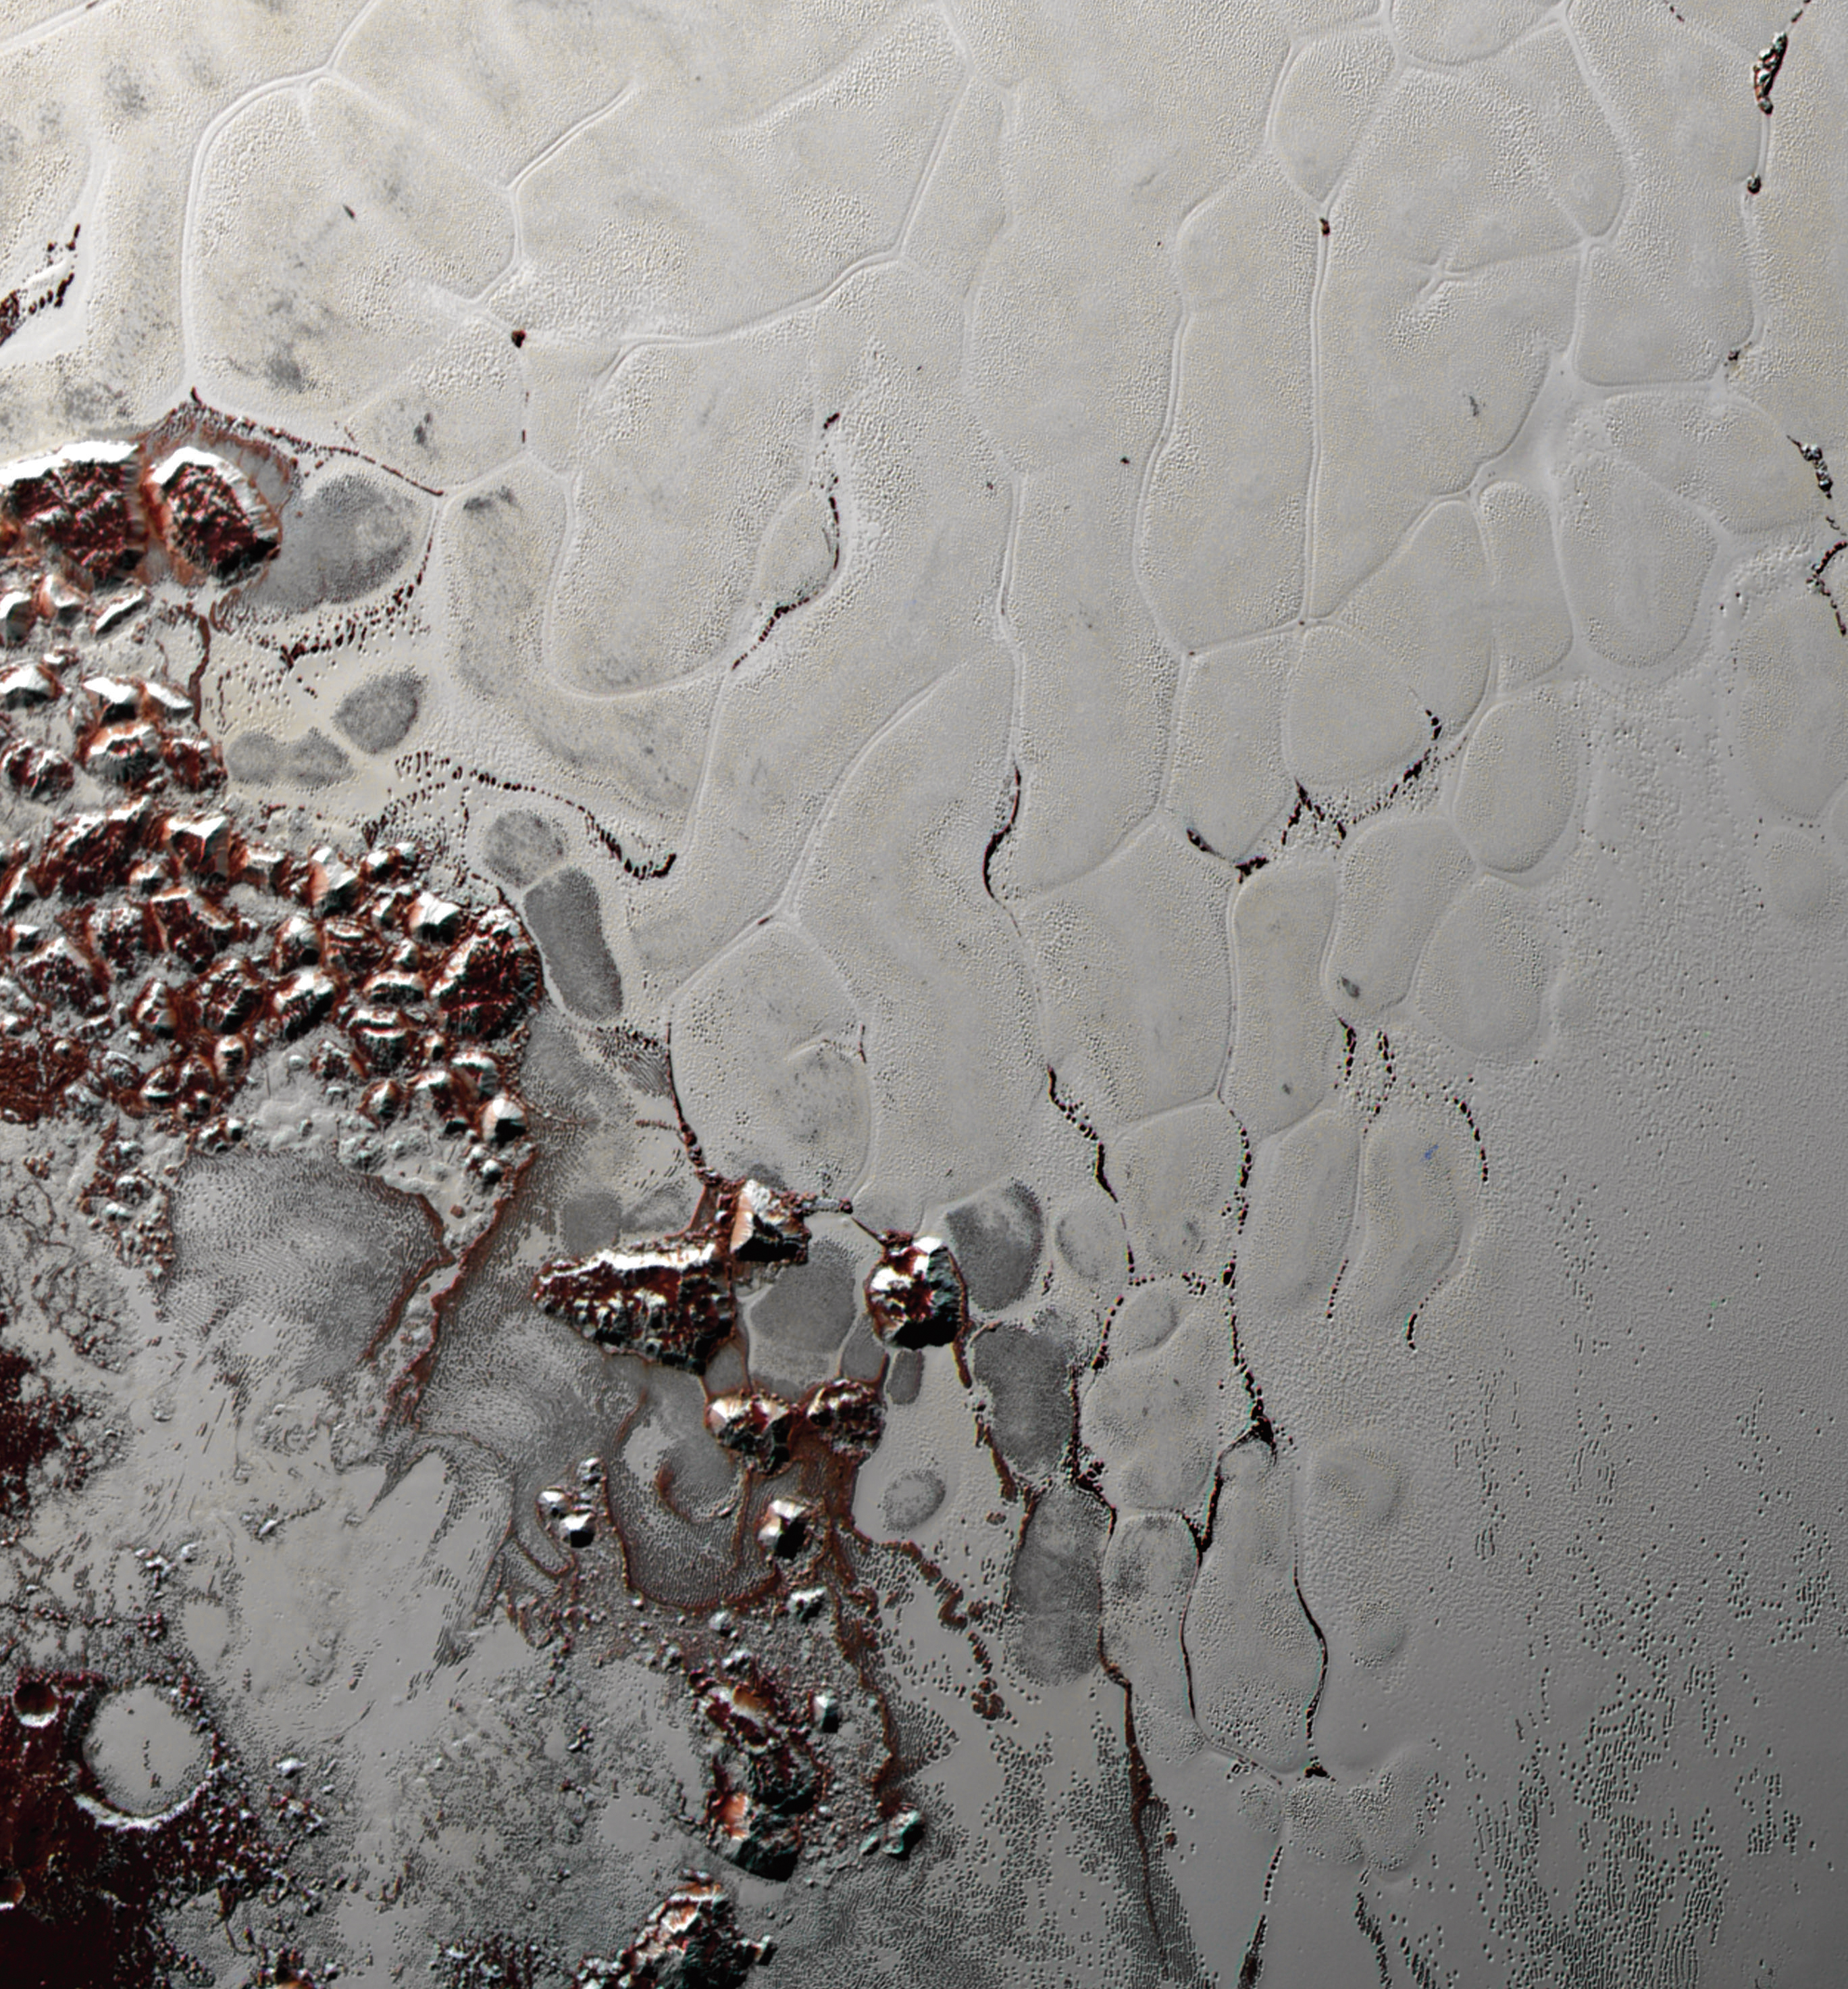 Una splendida vista delle bolle poligonali di ghiaccio d’azoto, che evolvono lentamente (per i nostri orologi…) e ringiovaniscono la superficie dell’immenso “cuore” di Plutone. Si notano anche i macigni di ghiaccio d’acqua e di metano, staccatisi dalle colline circostanti che vengono accumulati ai bordi della struttura. Fonte: NASA/Johns Hopkins University Applied Physics Laboratory/Southwest Research Institute.